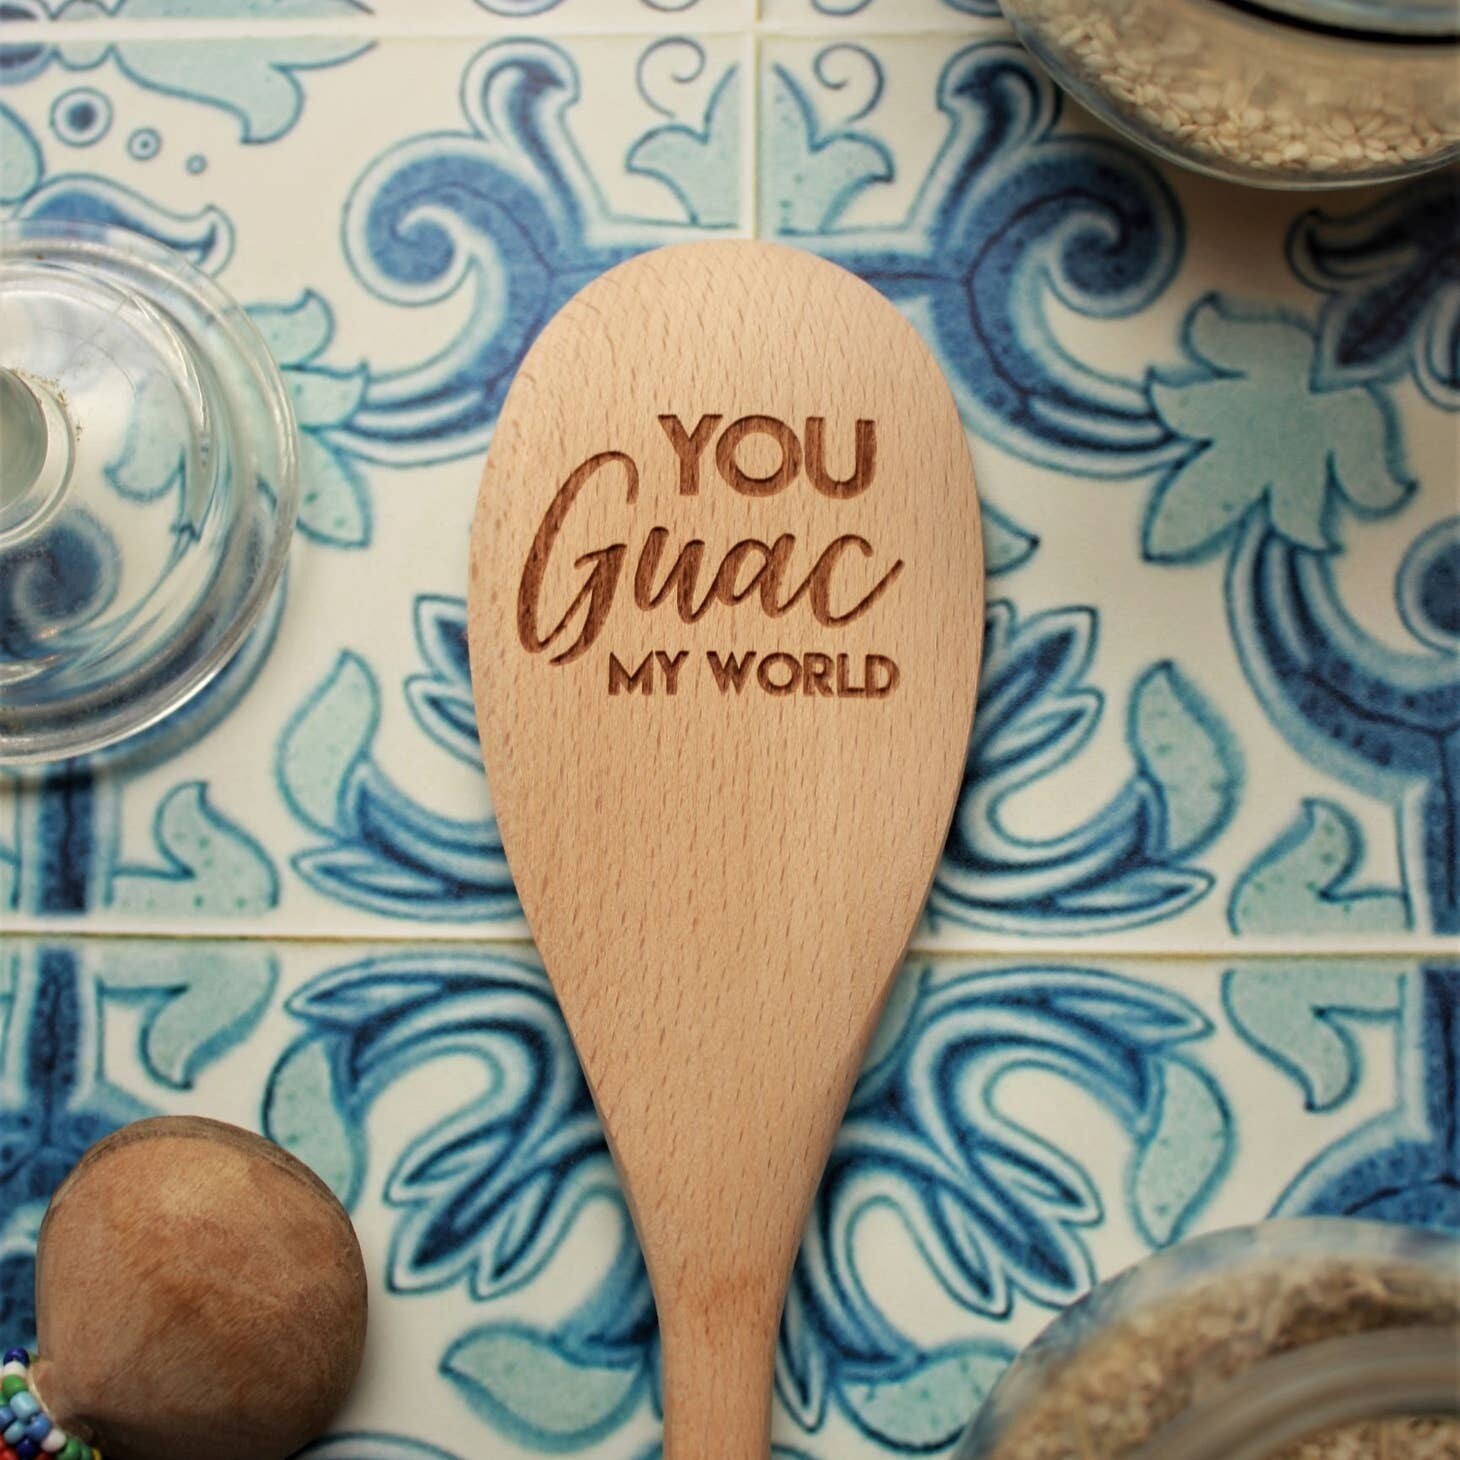 Guac My World Spoon